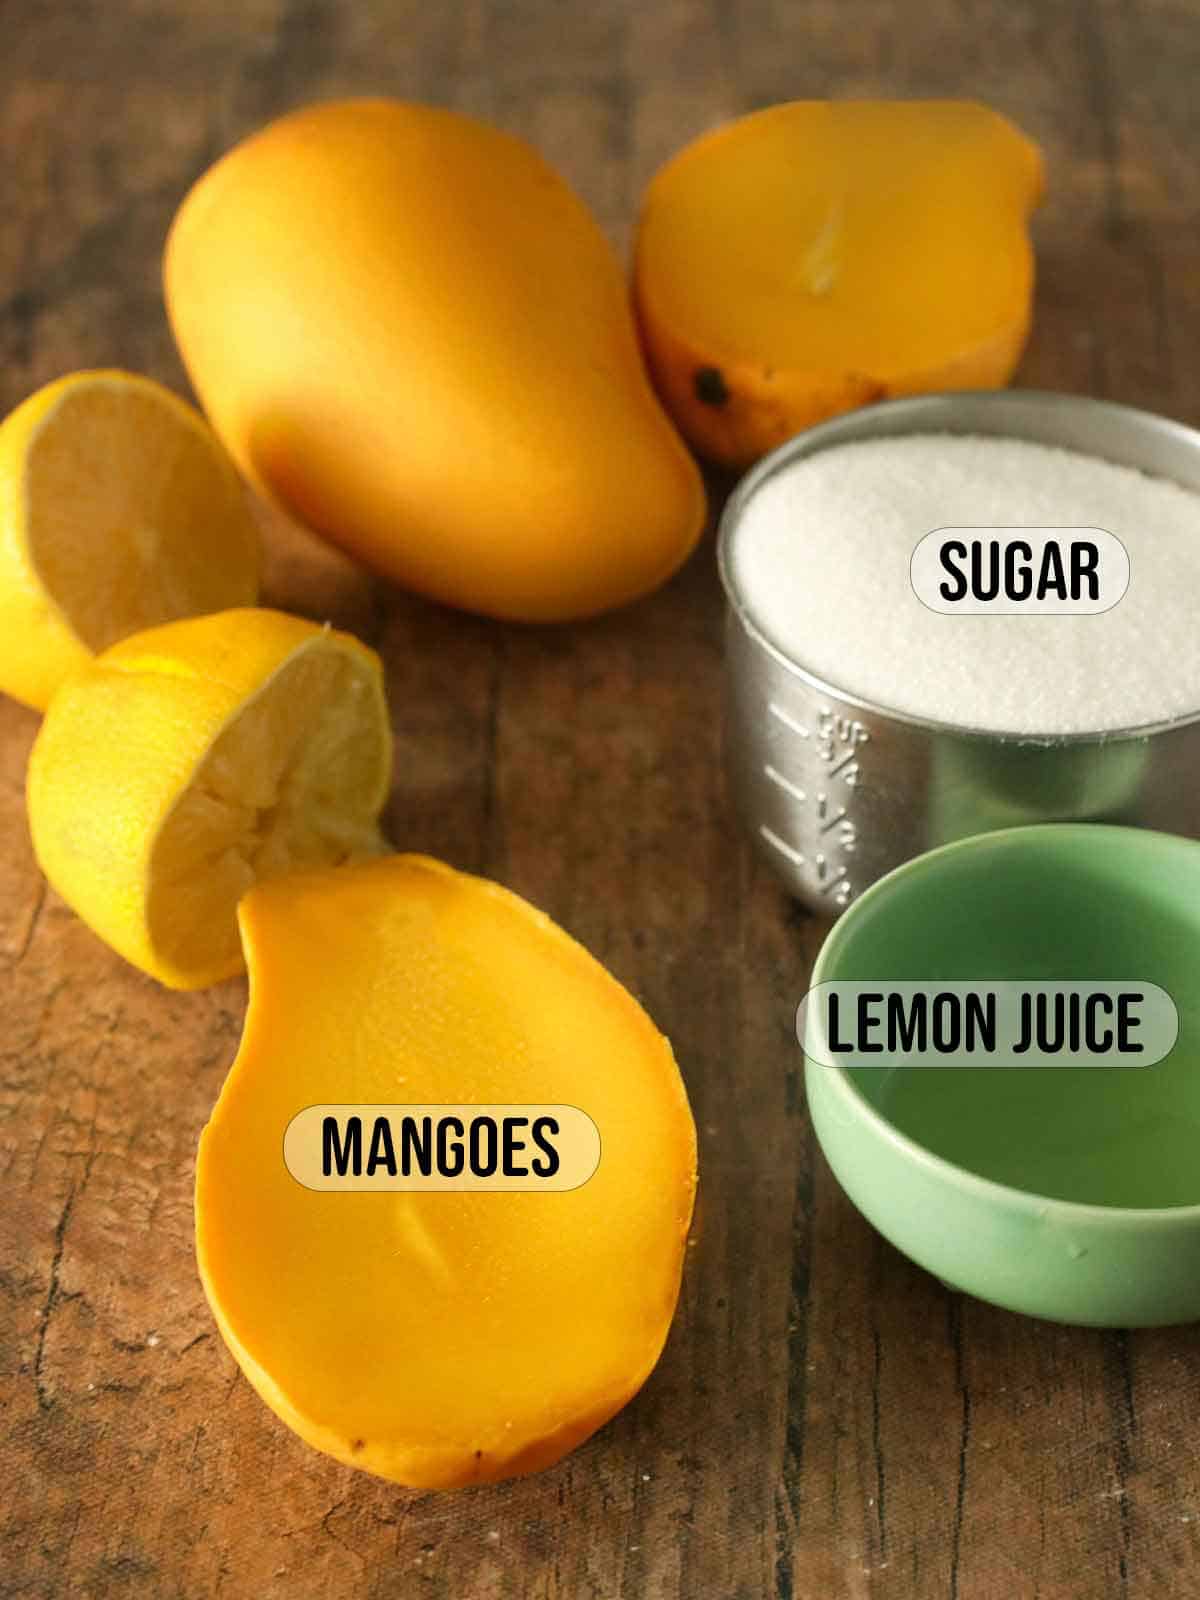 mangoes, sugar, and lemons.